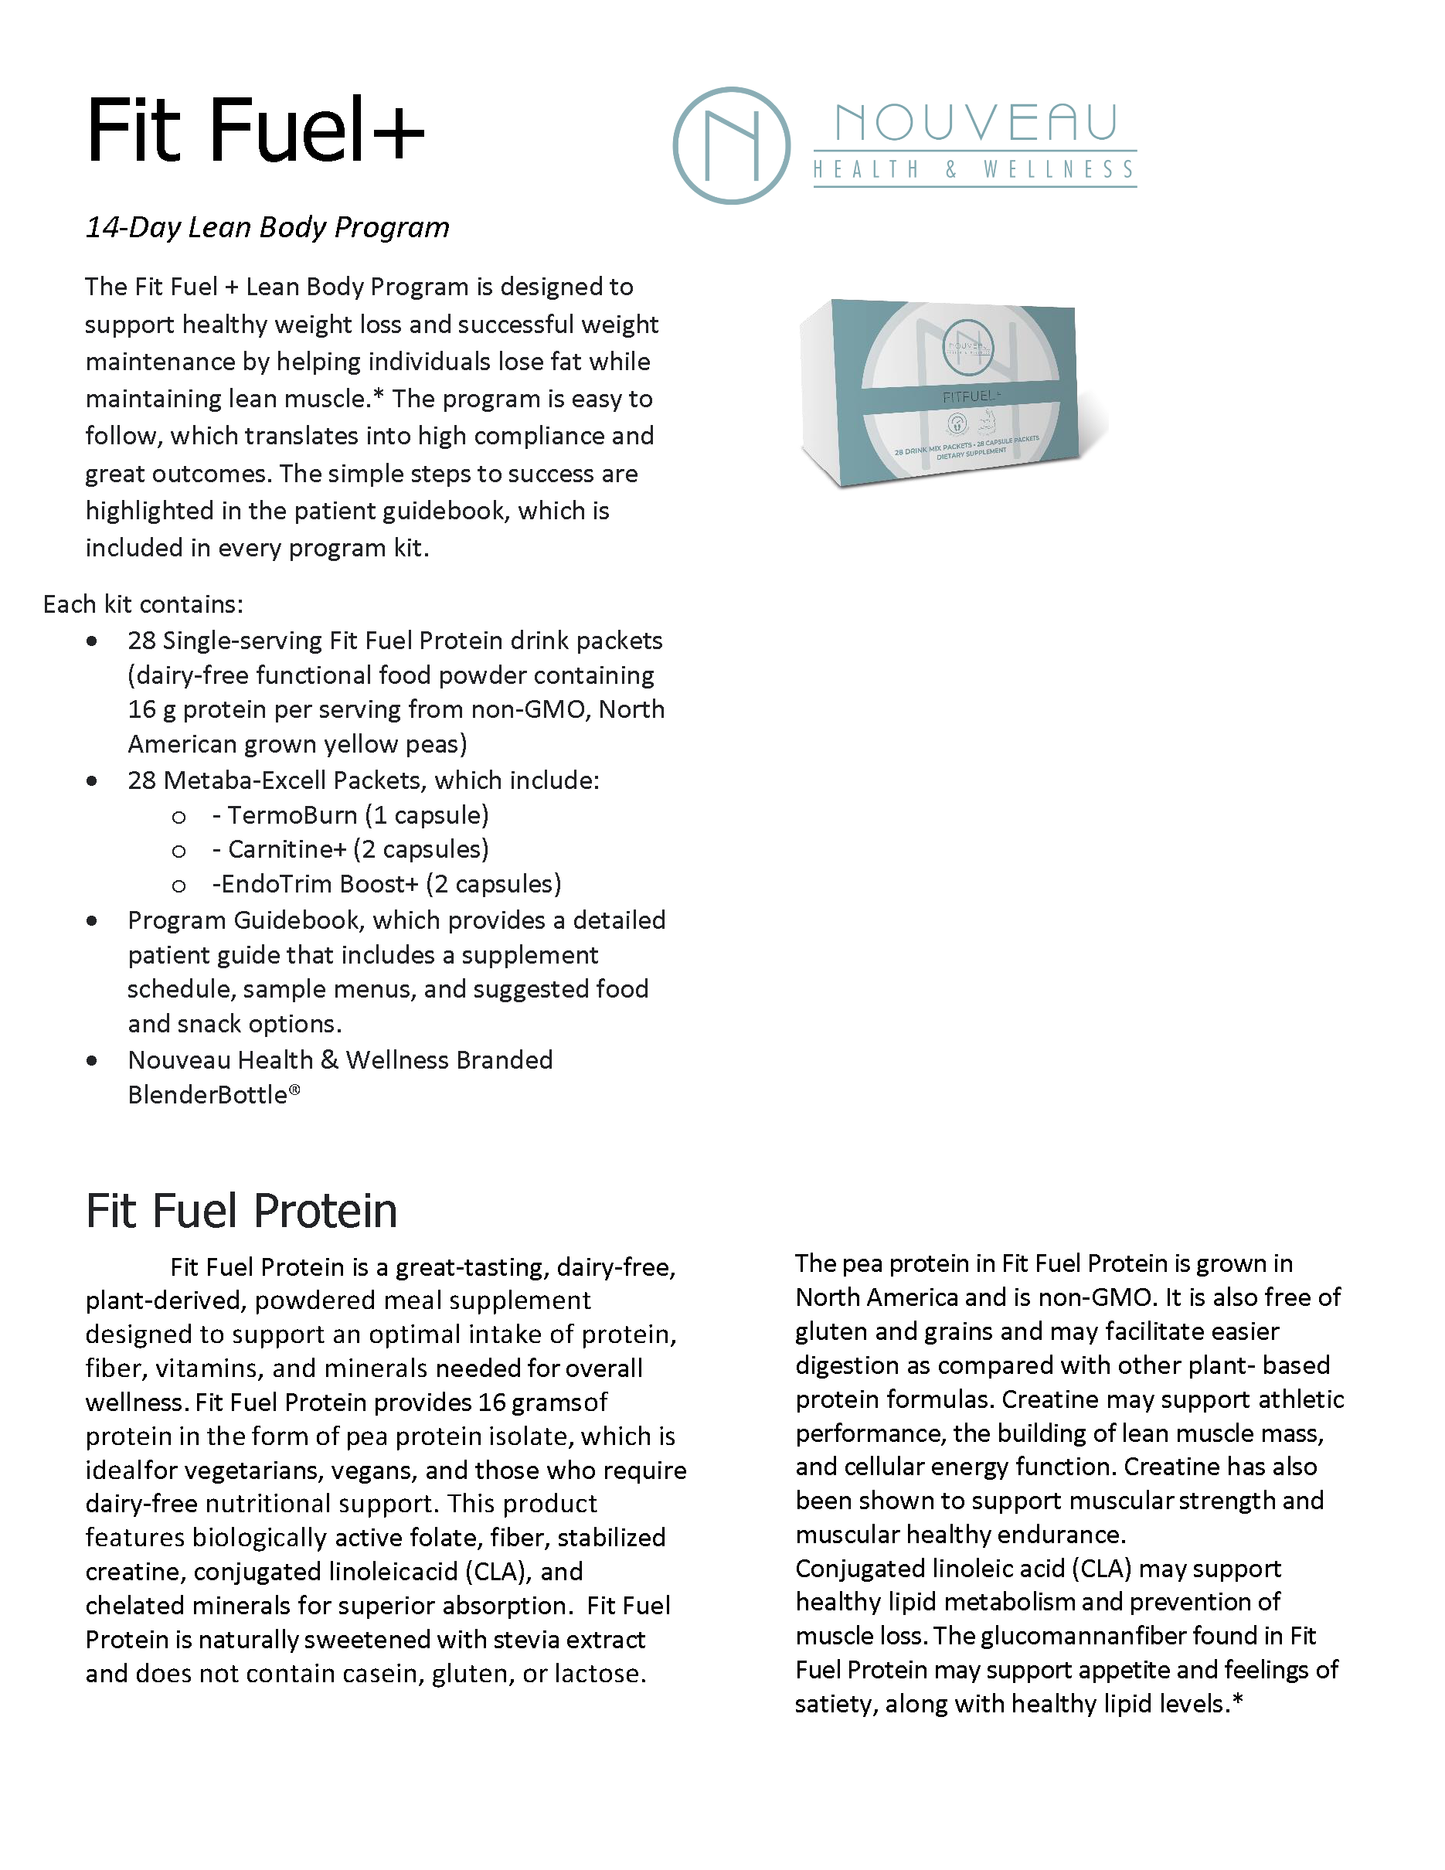 Fit Fuel+ Lean Body Program